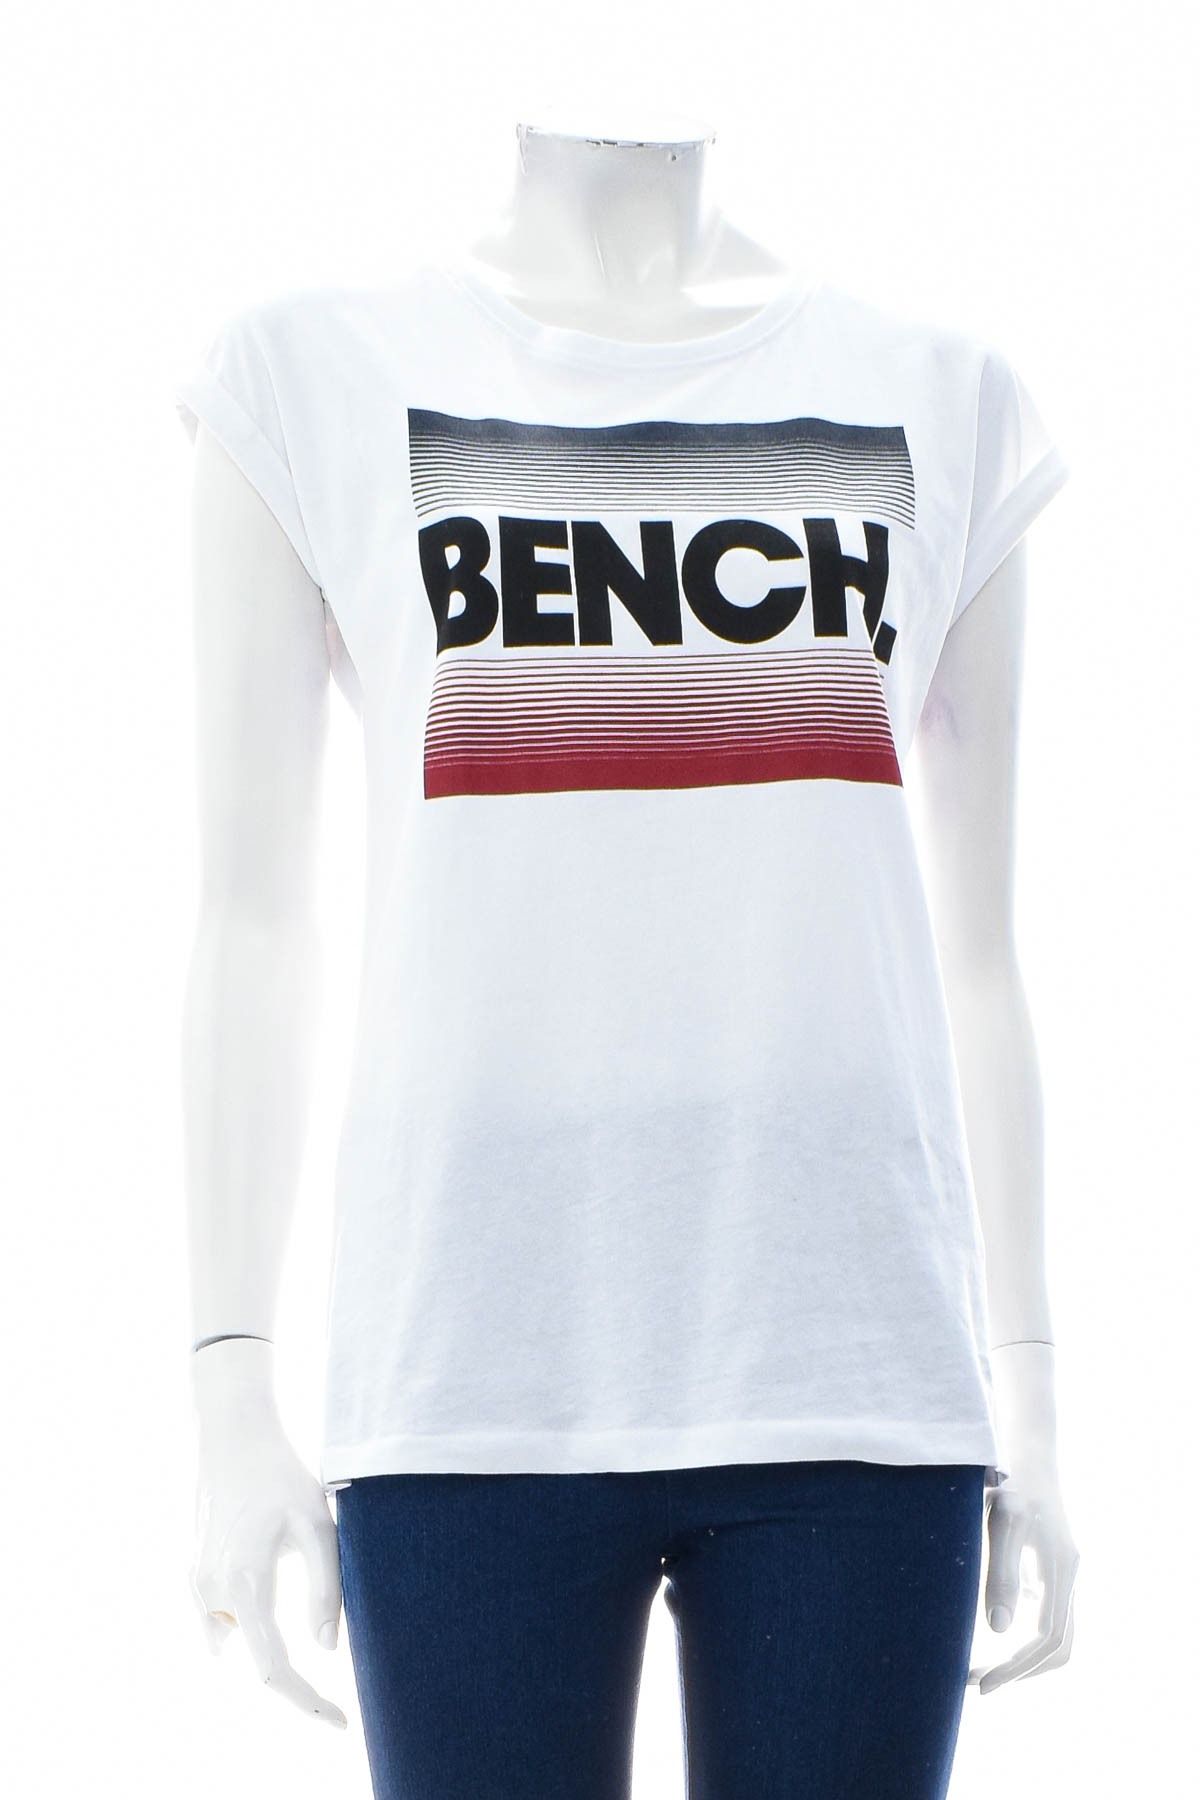 Μπλουζάκι για κορίτσι - Bench. - 0